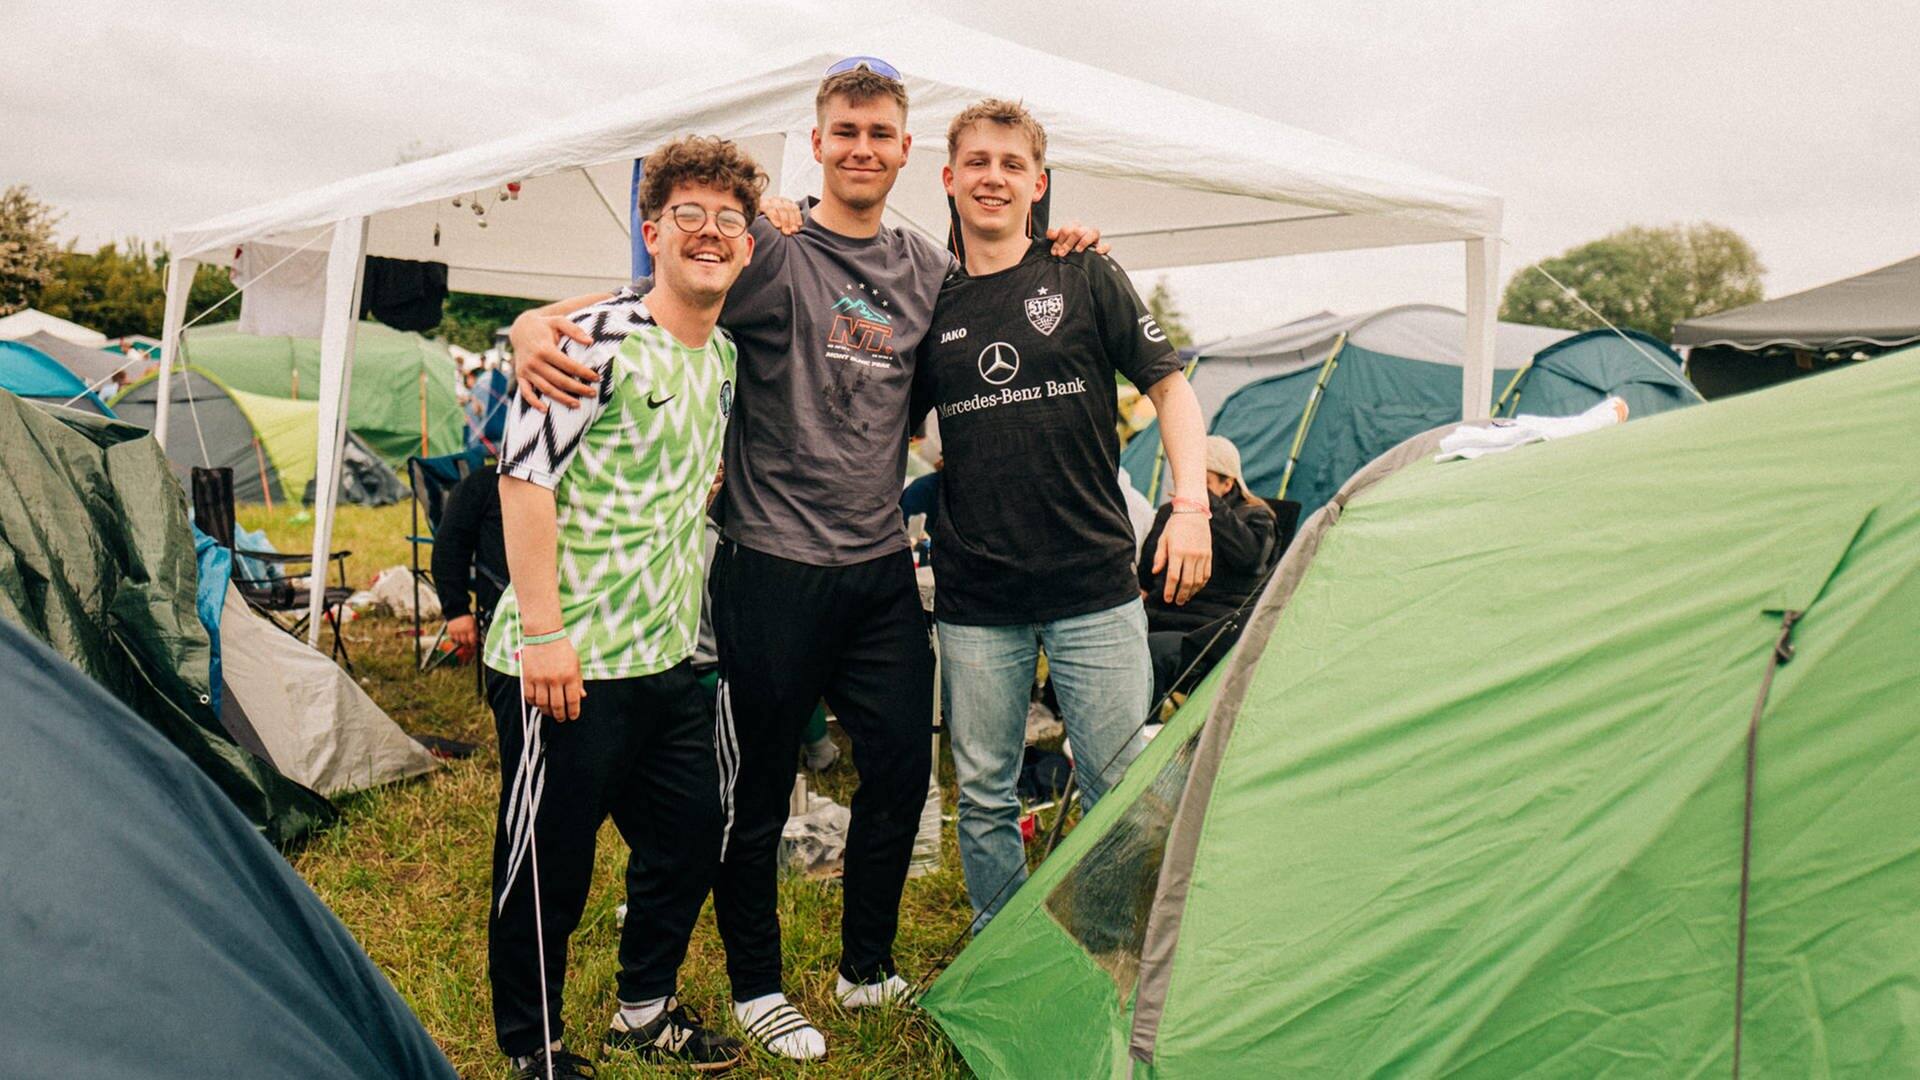 Campus-Festival-Besucher beim Campen (Foto: SWR3, Niko Neithardt)